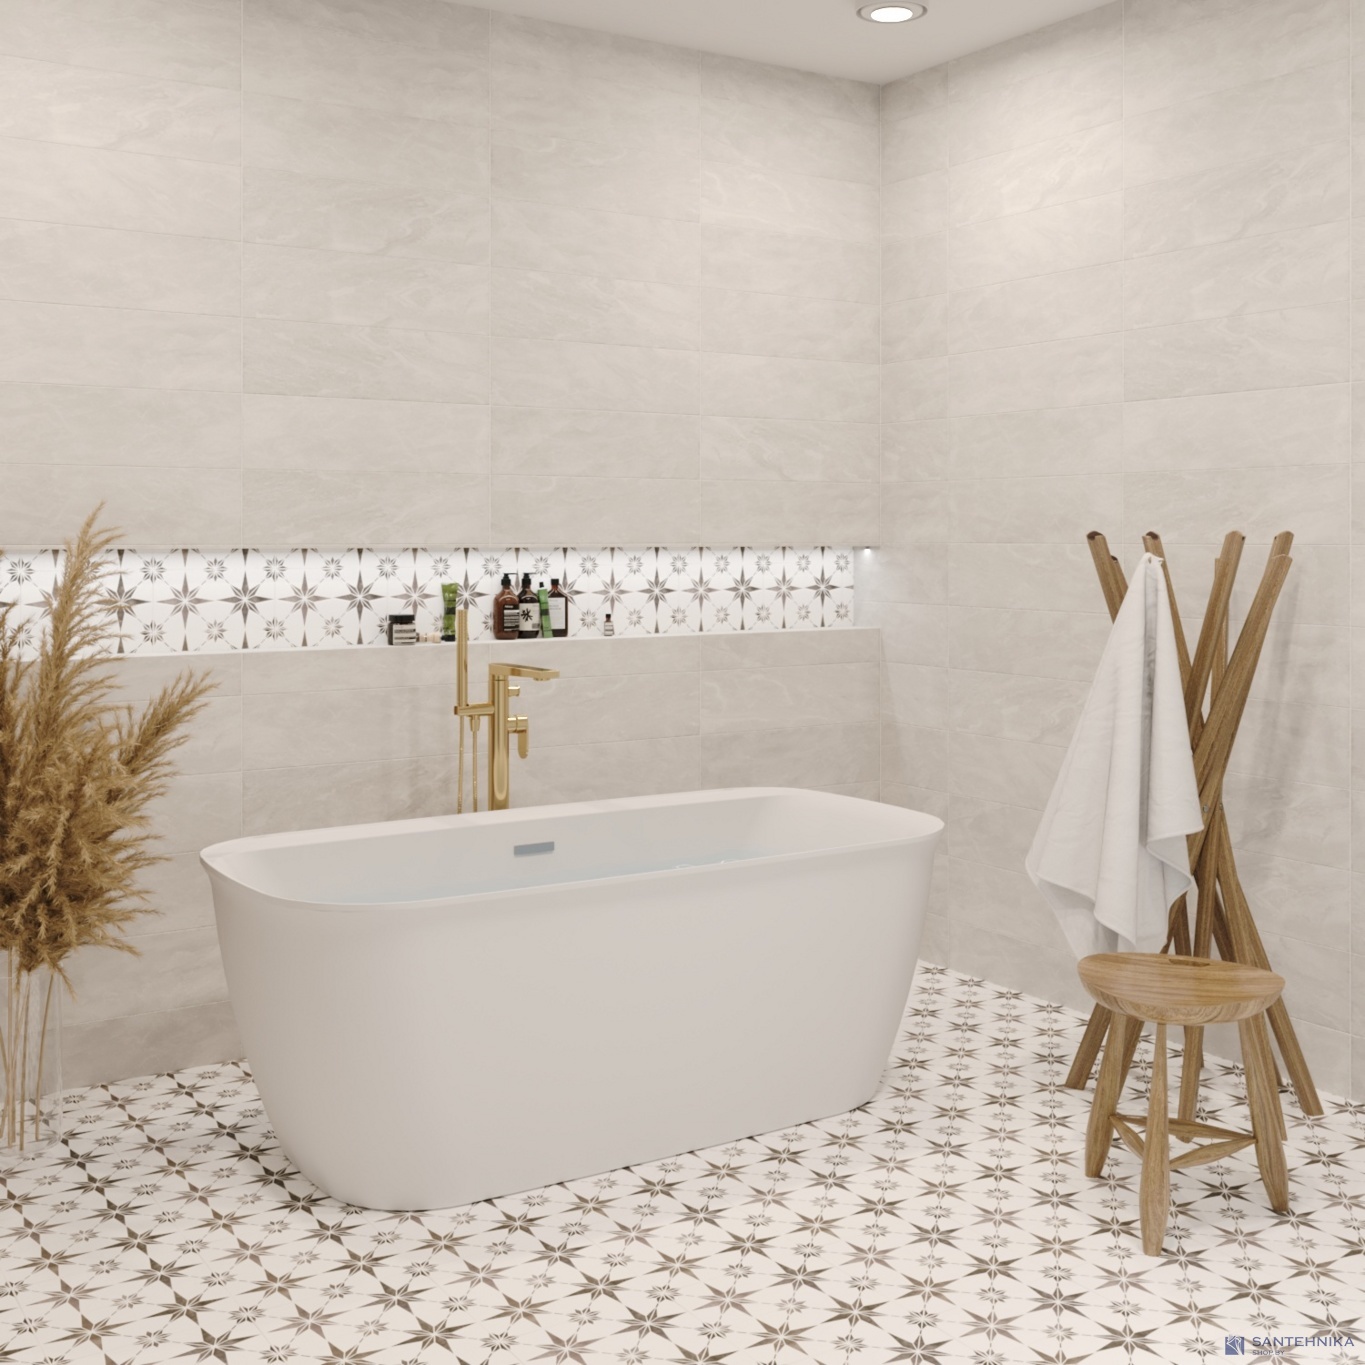 Отдельностоящая акриловая ванна Wellsee Brillant iCon 160x80, сифон белый